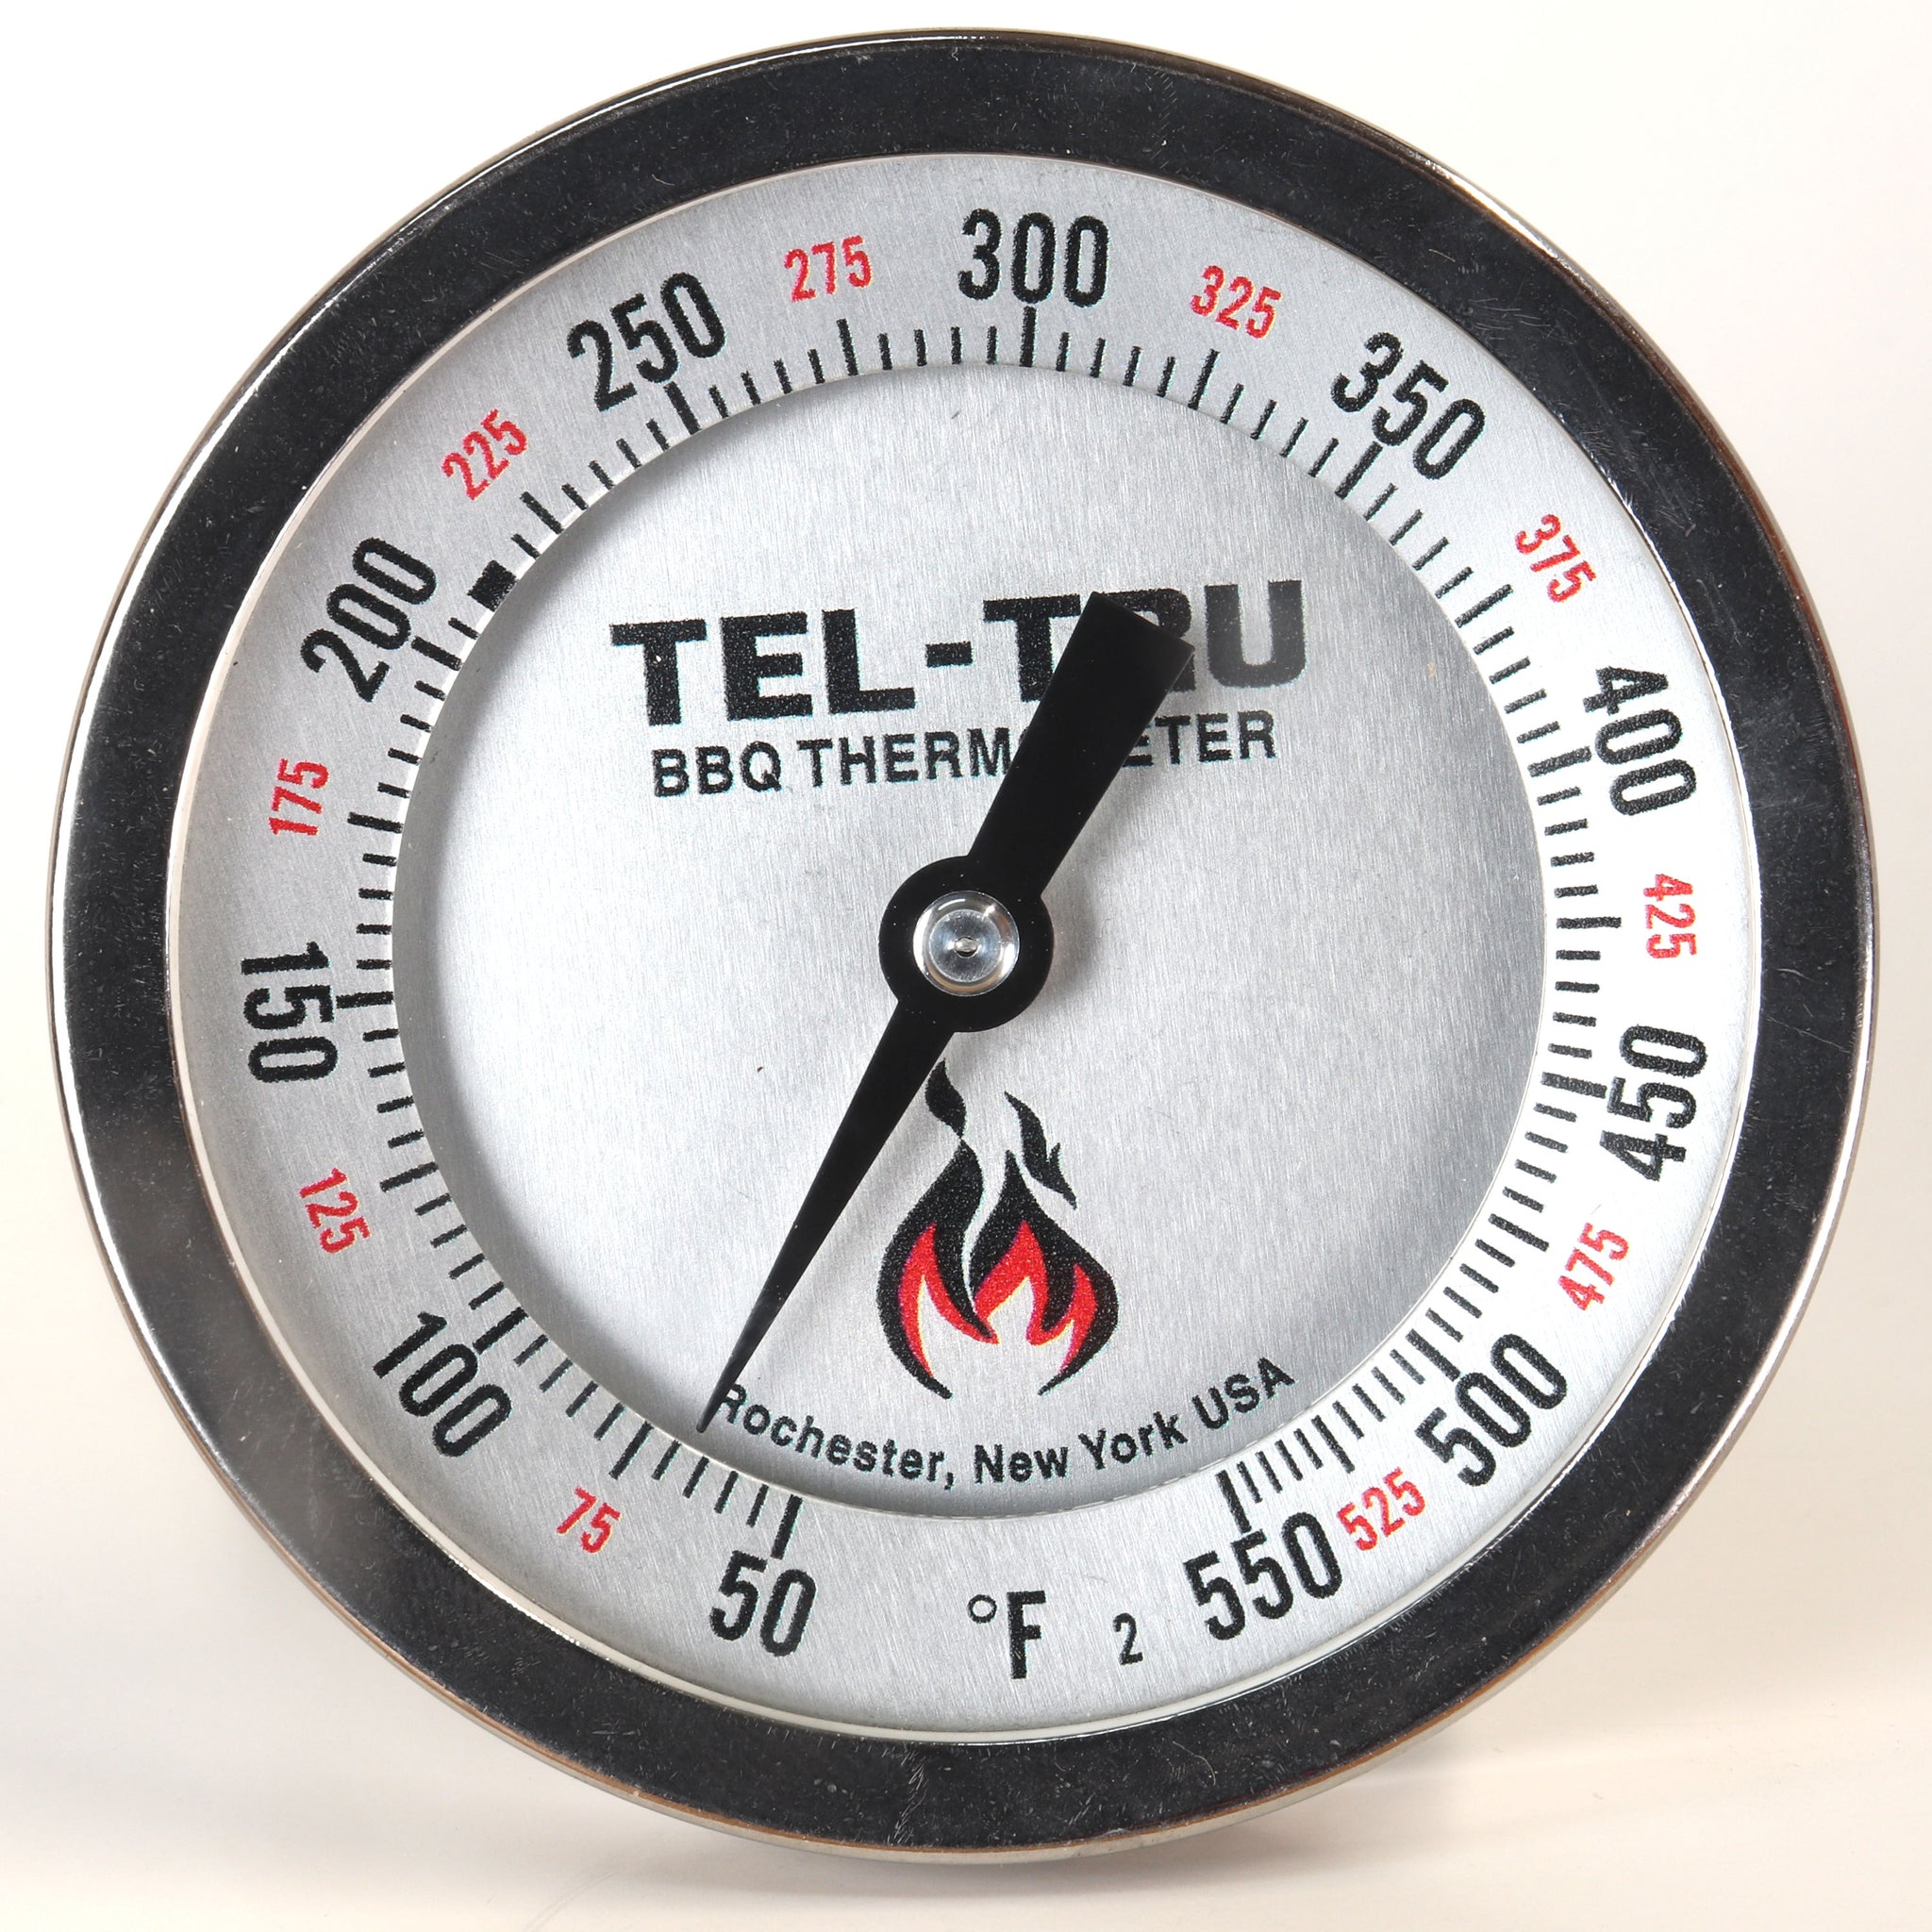 Tel-Tru BQ500 Glow Dial BBQ Grill Thermometer - 6 Stem